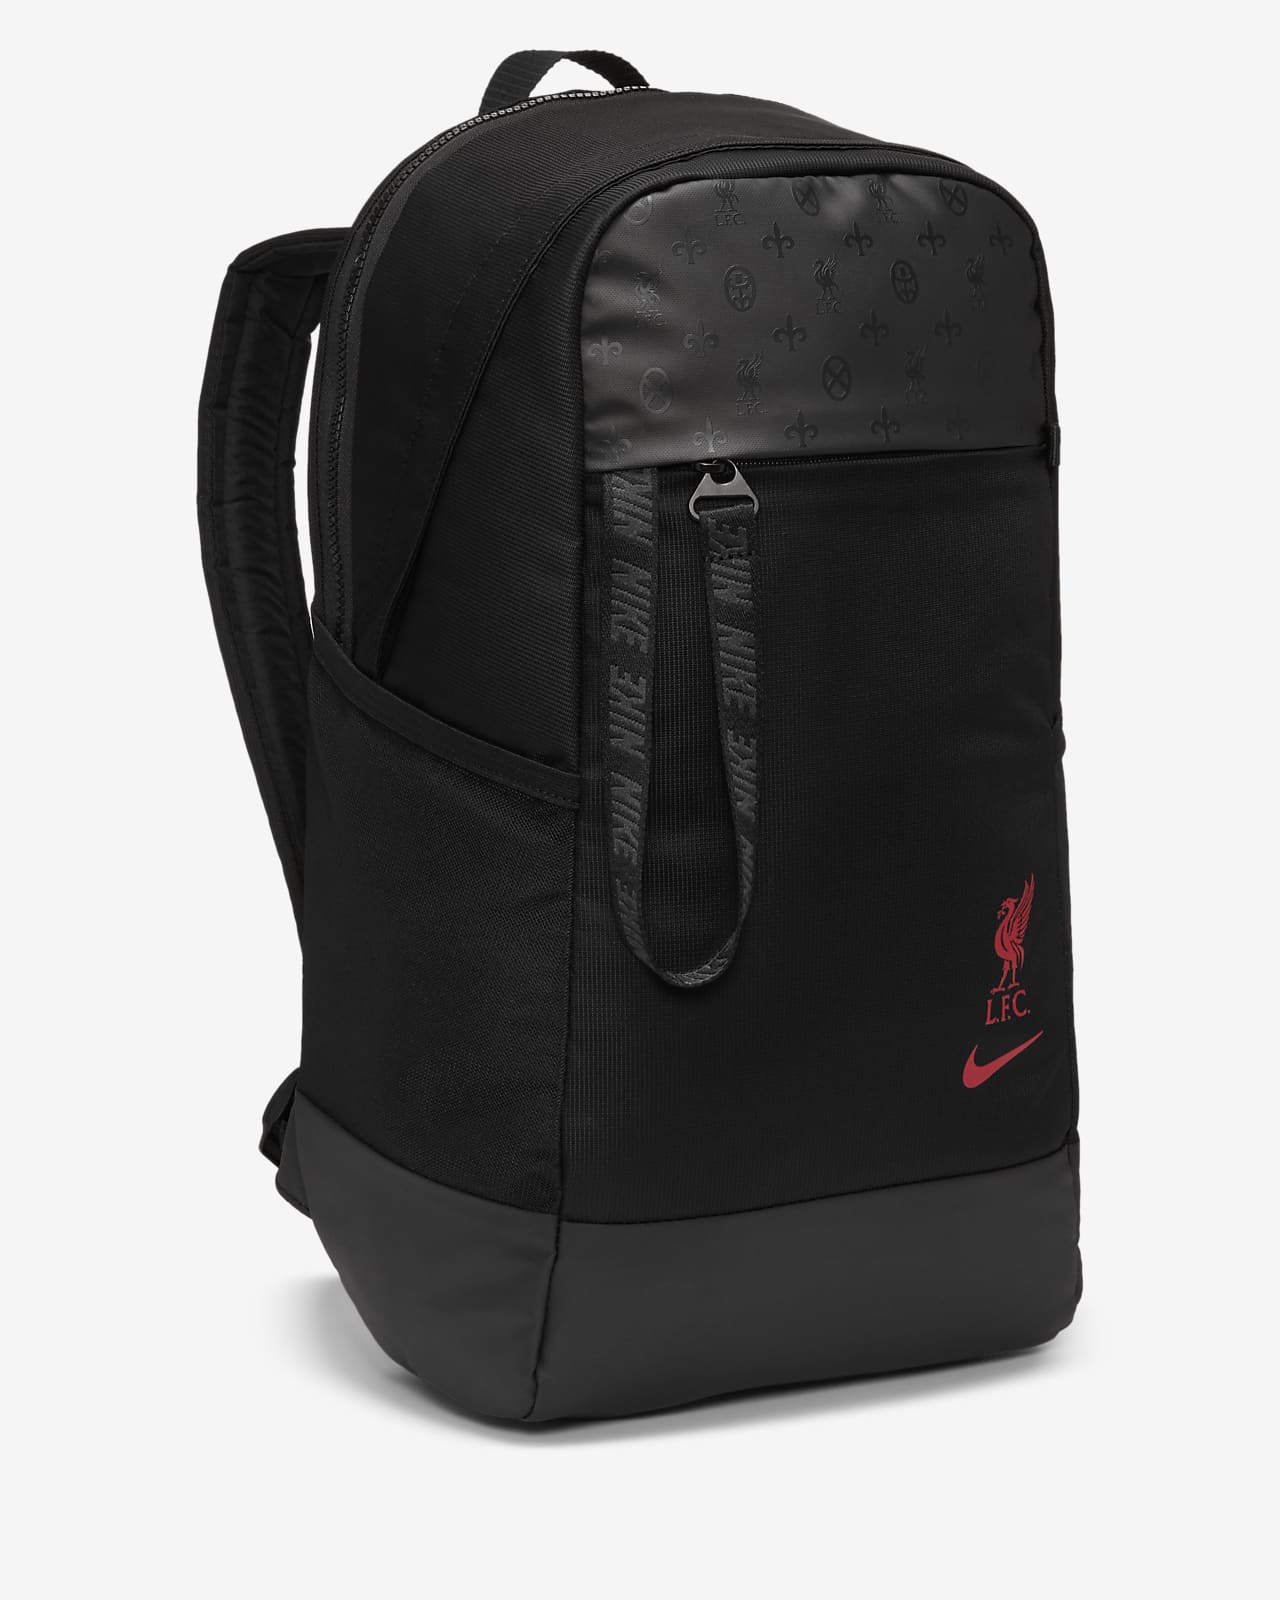 liverpool backpack nike